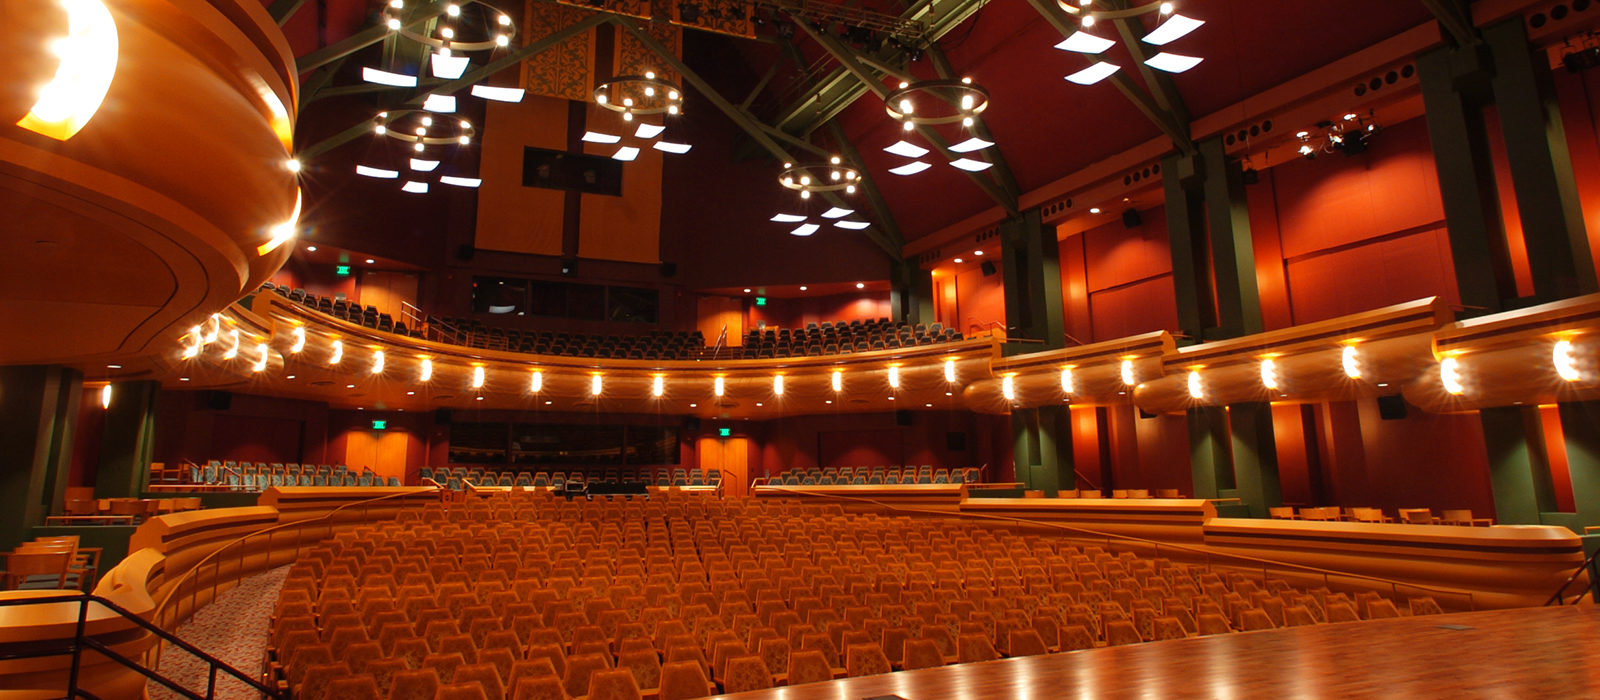 Debartolo Performing Arts Center Seating Chart